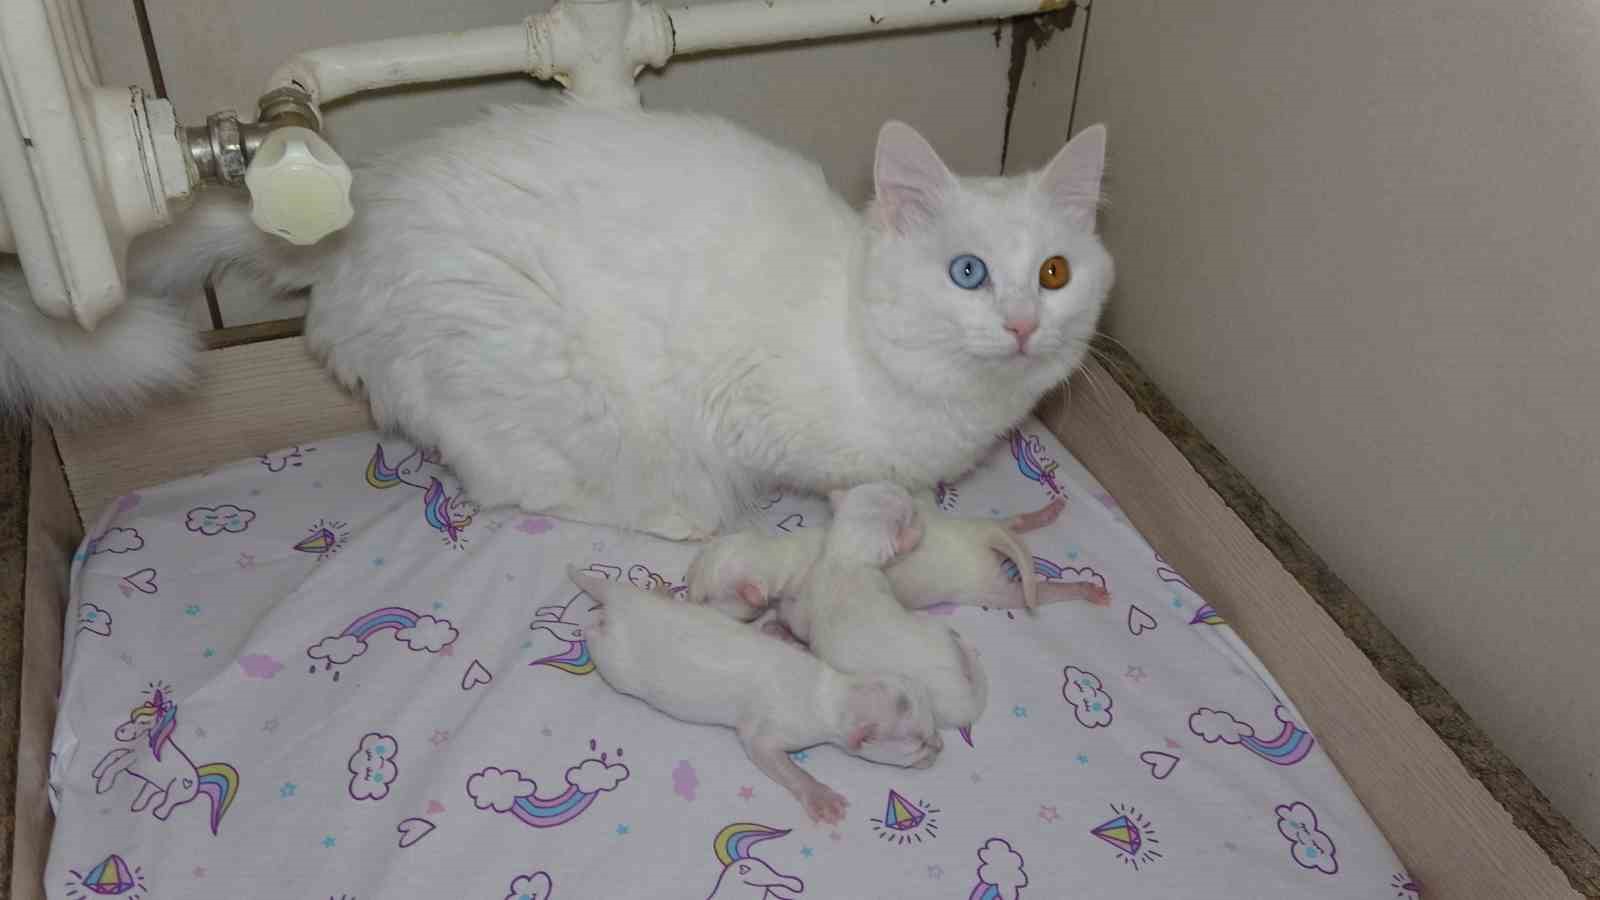 2023 yılının ilk yavru Van kedileri dünyaya geldi